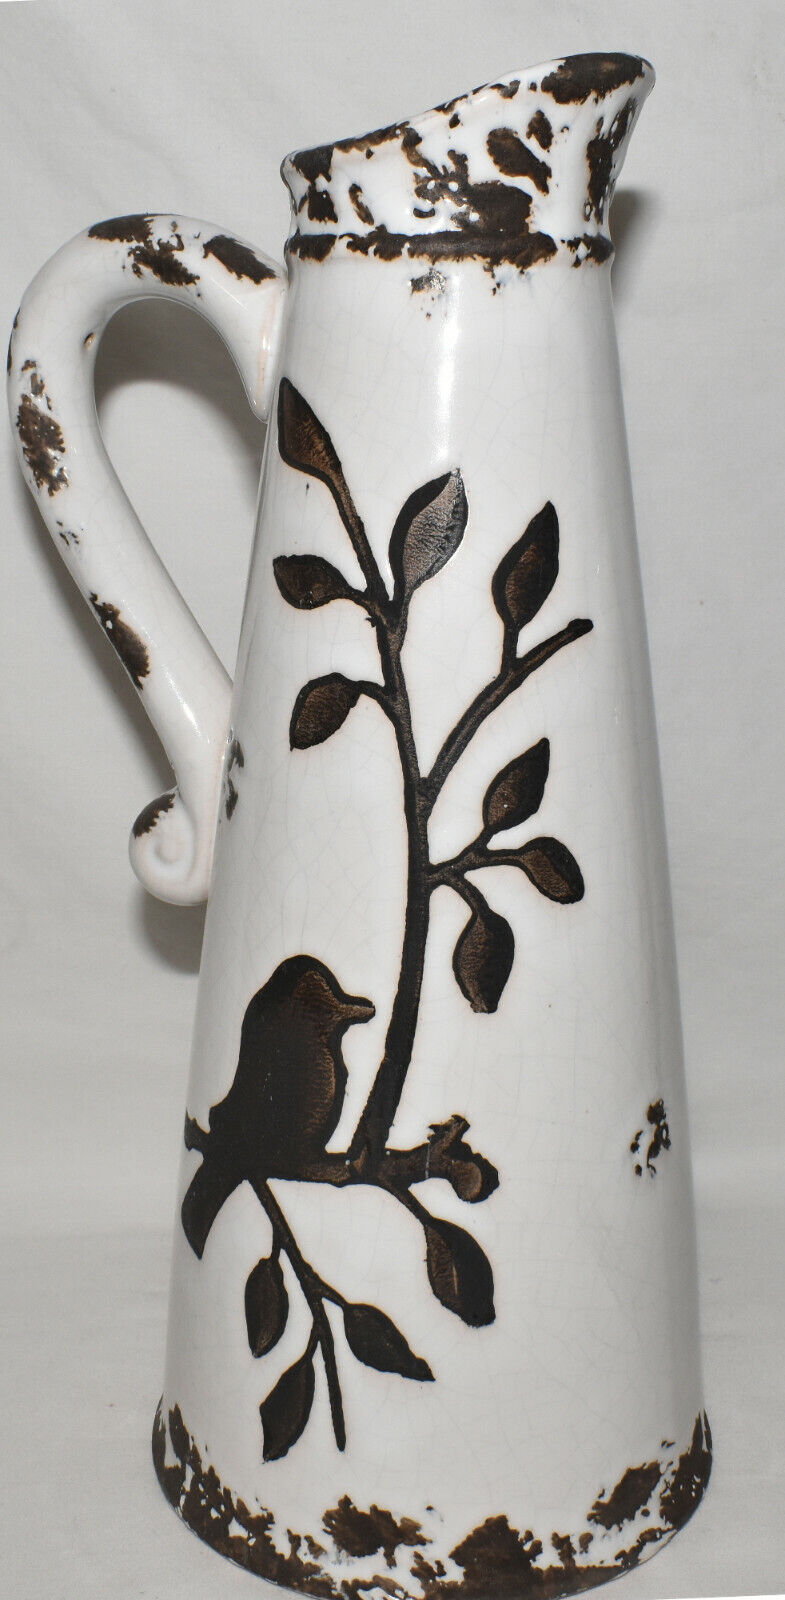 13" Ceramic Bird Vase Pitcher Brown White Distressed Crackle Glaze Bird Vase New